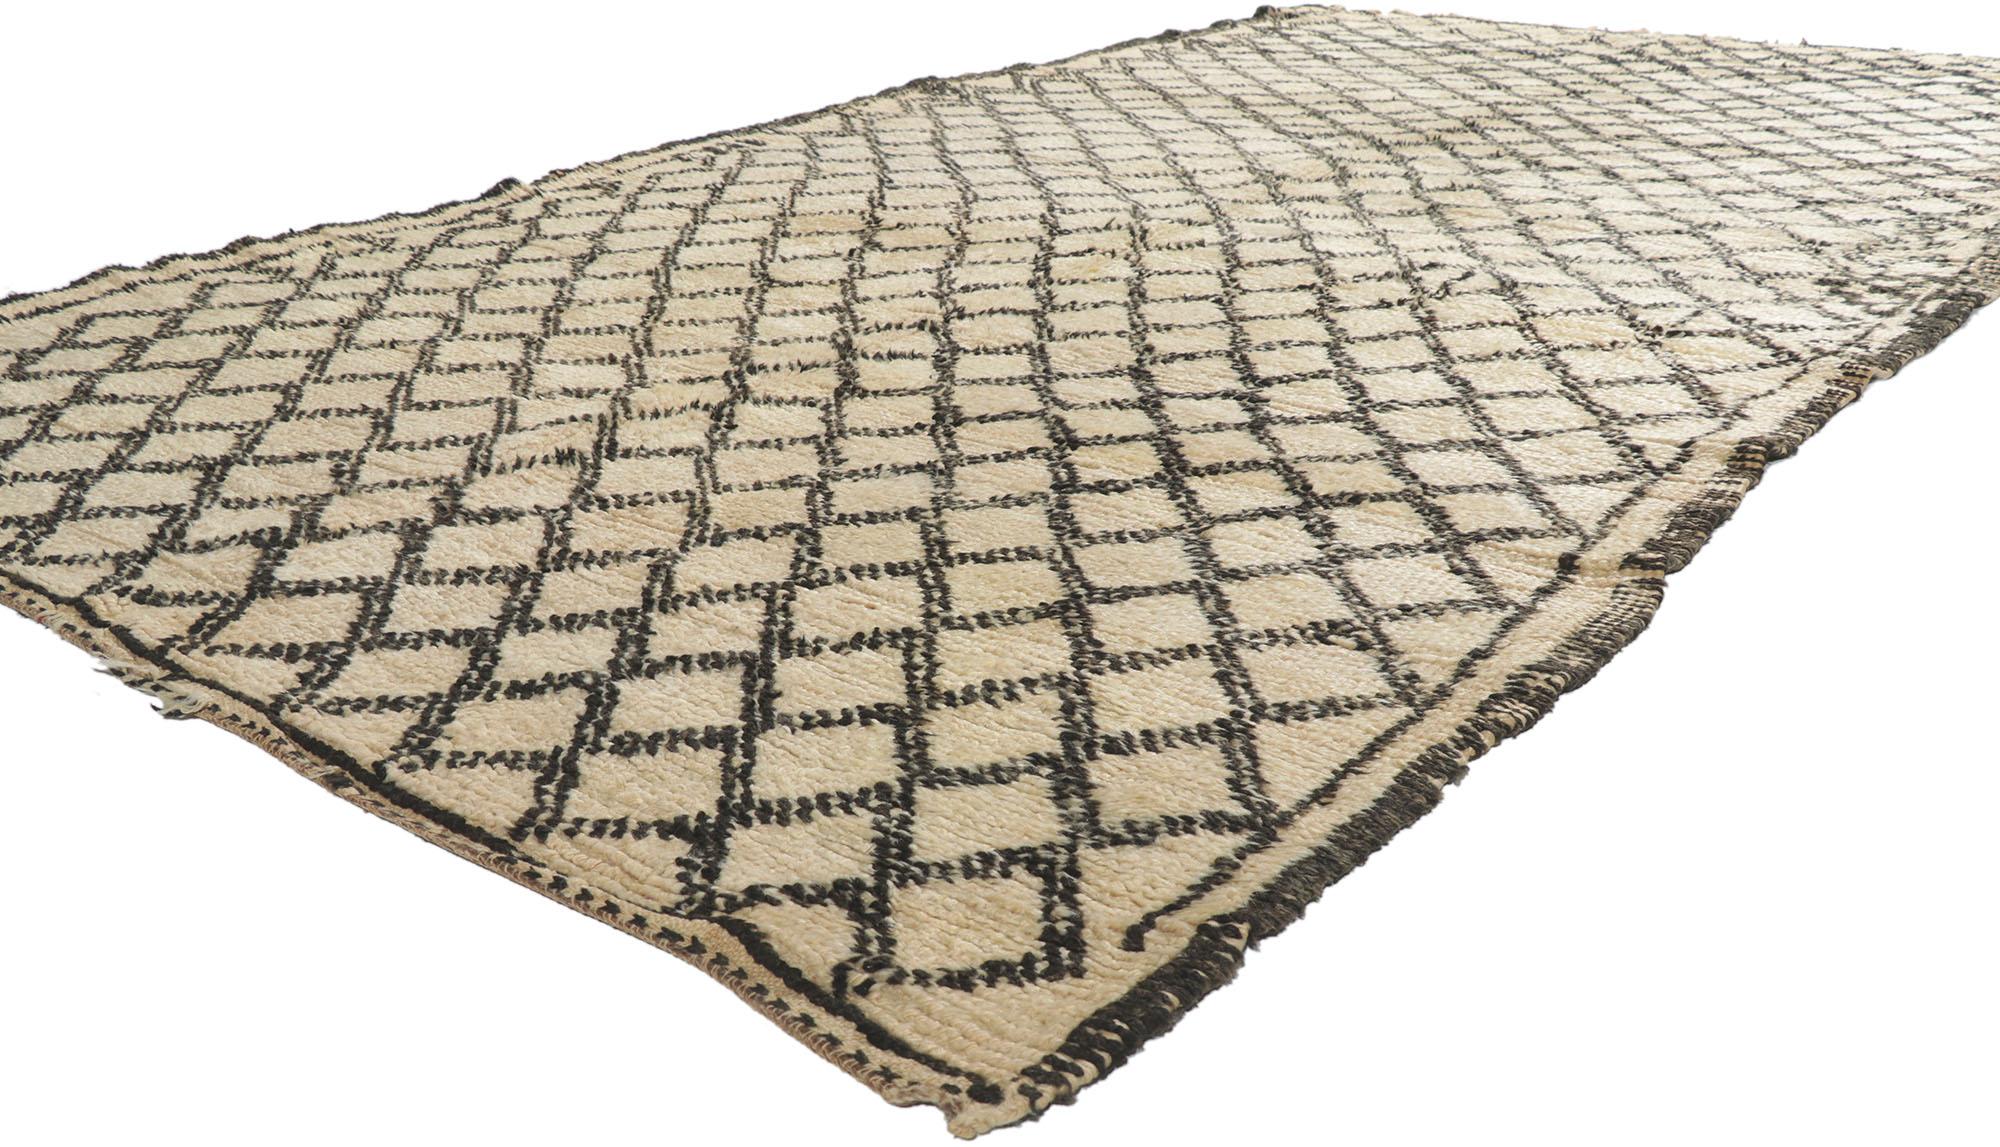 21350 Vintage Berber marokkanischen Beni Ourain Teppich mit Tribal Style 05'10 x 11'04. Diese kunstvoll gefertigten Teppiche, die vom angesehenen Beni Ourain-Stamm in Marokko stammen, sind eine Hommage an die Tradition und werden mit viel Liebe zum